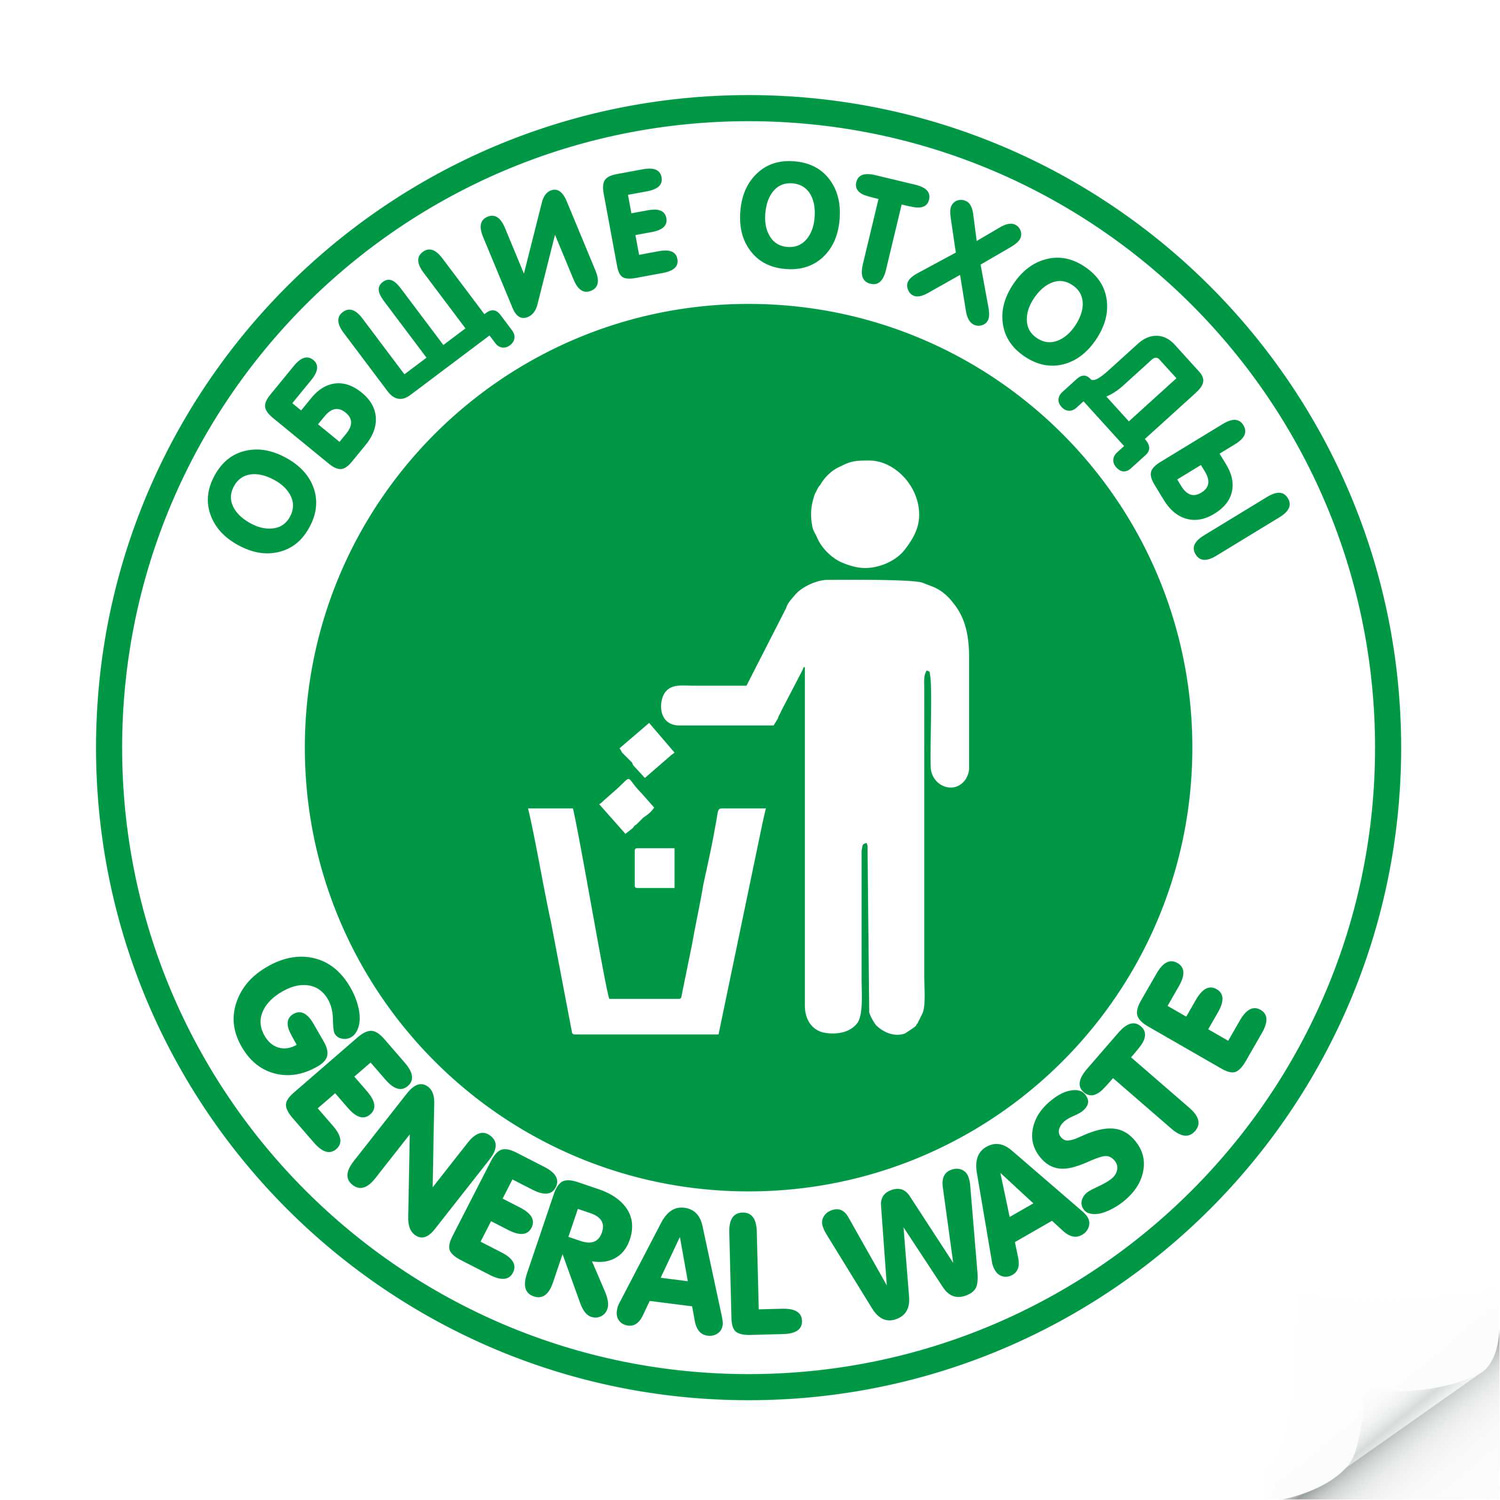 Наклейка "Общие отходы" зеленая, круглая